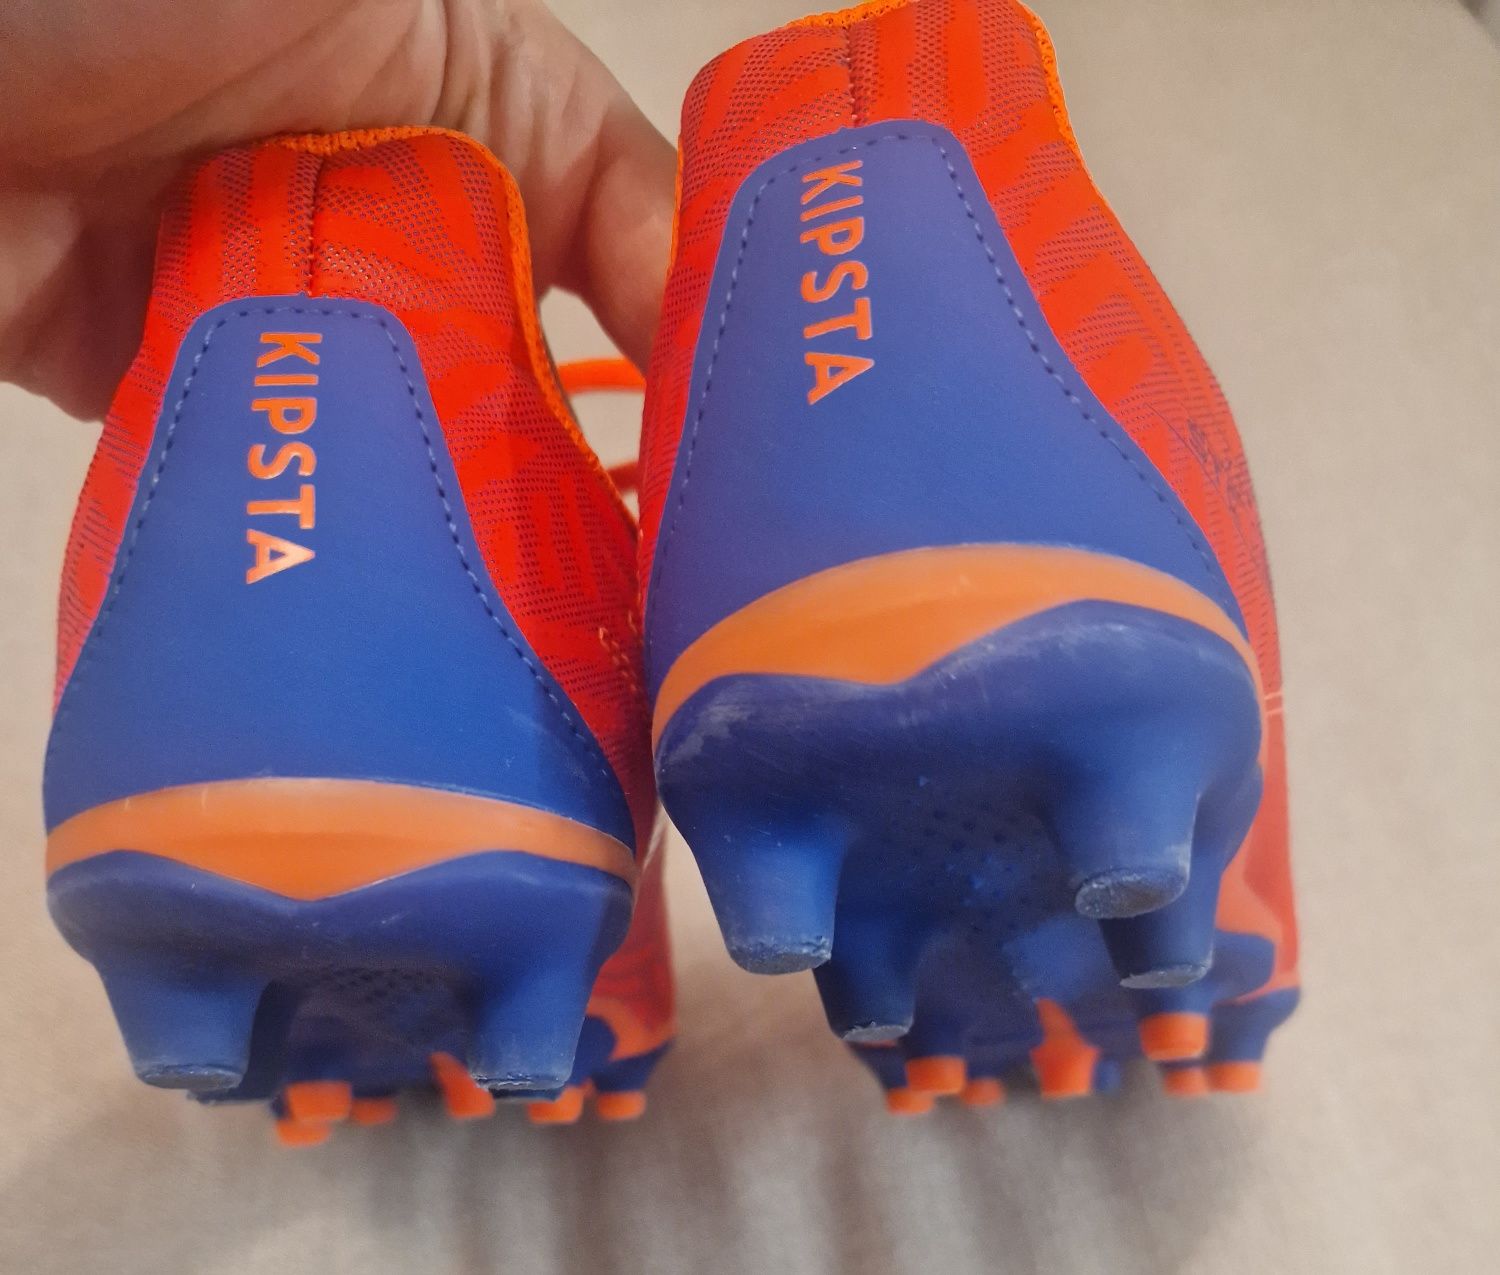 Детски бутони  за футбол viralto i mg/ag, с връзки, оранжево/синьо